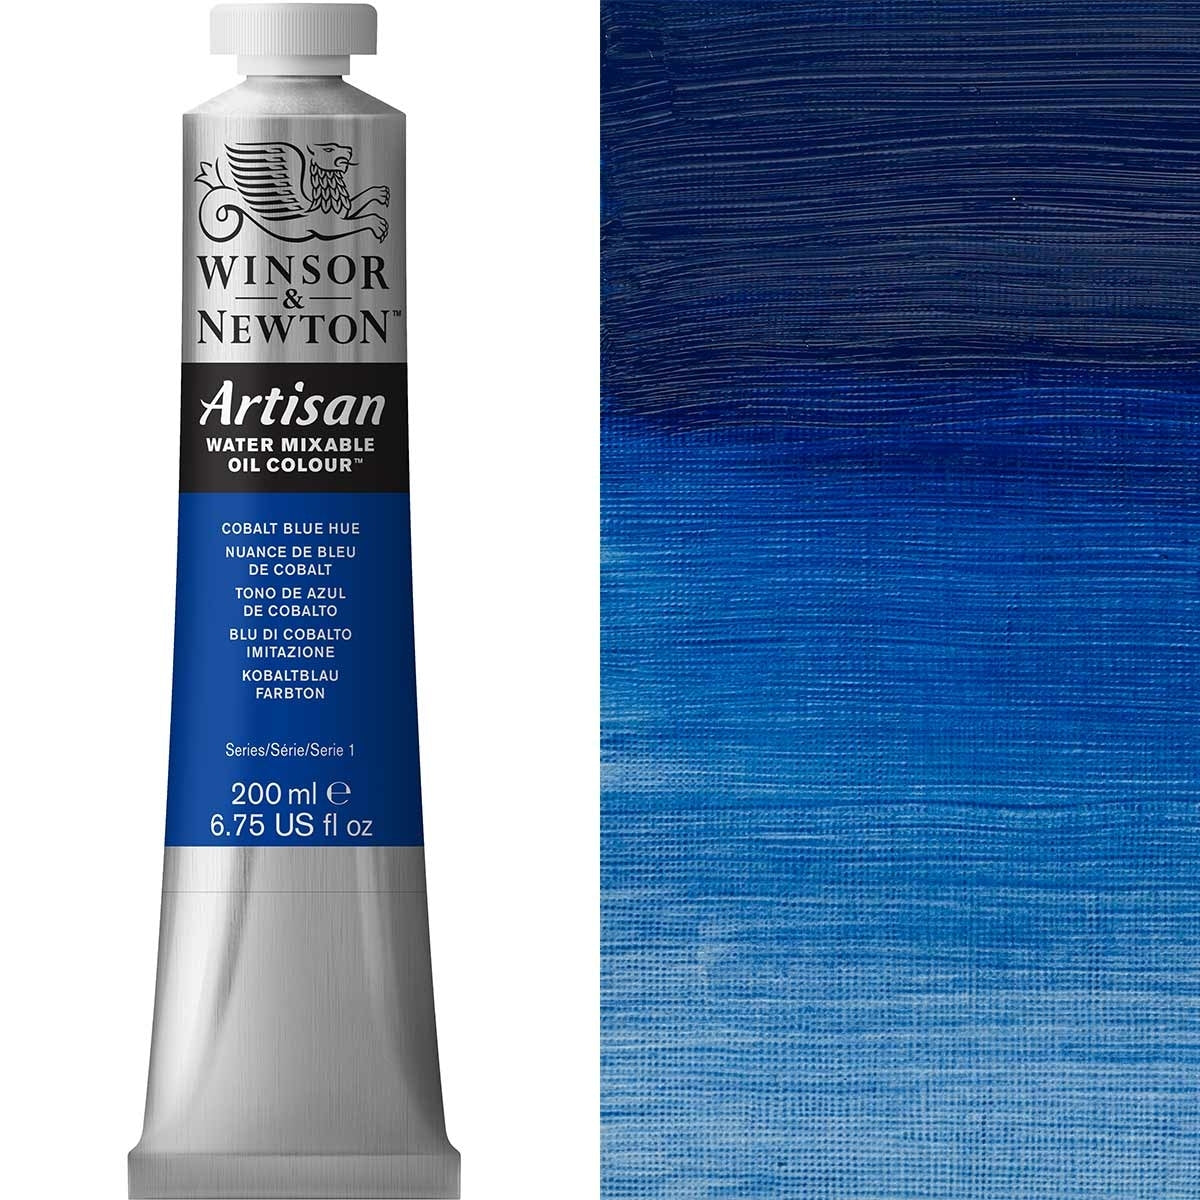 Winsor et Newton - Couleur d'huile artisanale Watermixable - 200 ml - Cobalt Blue Hue